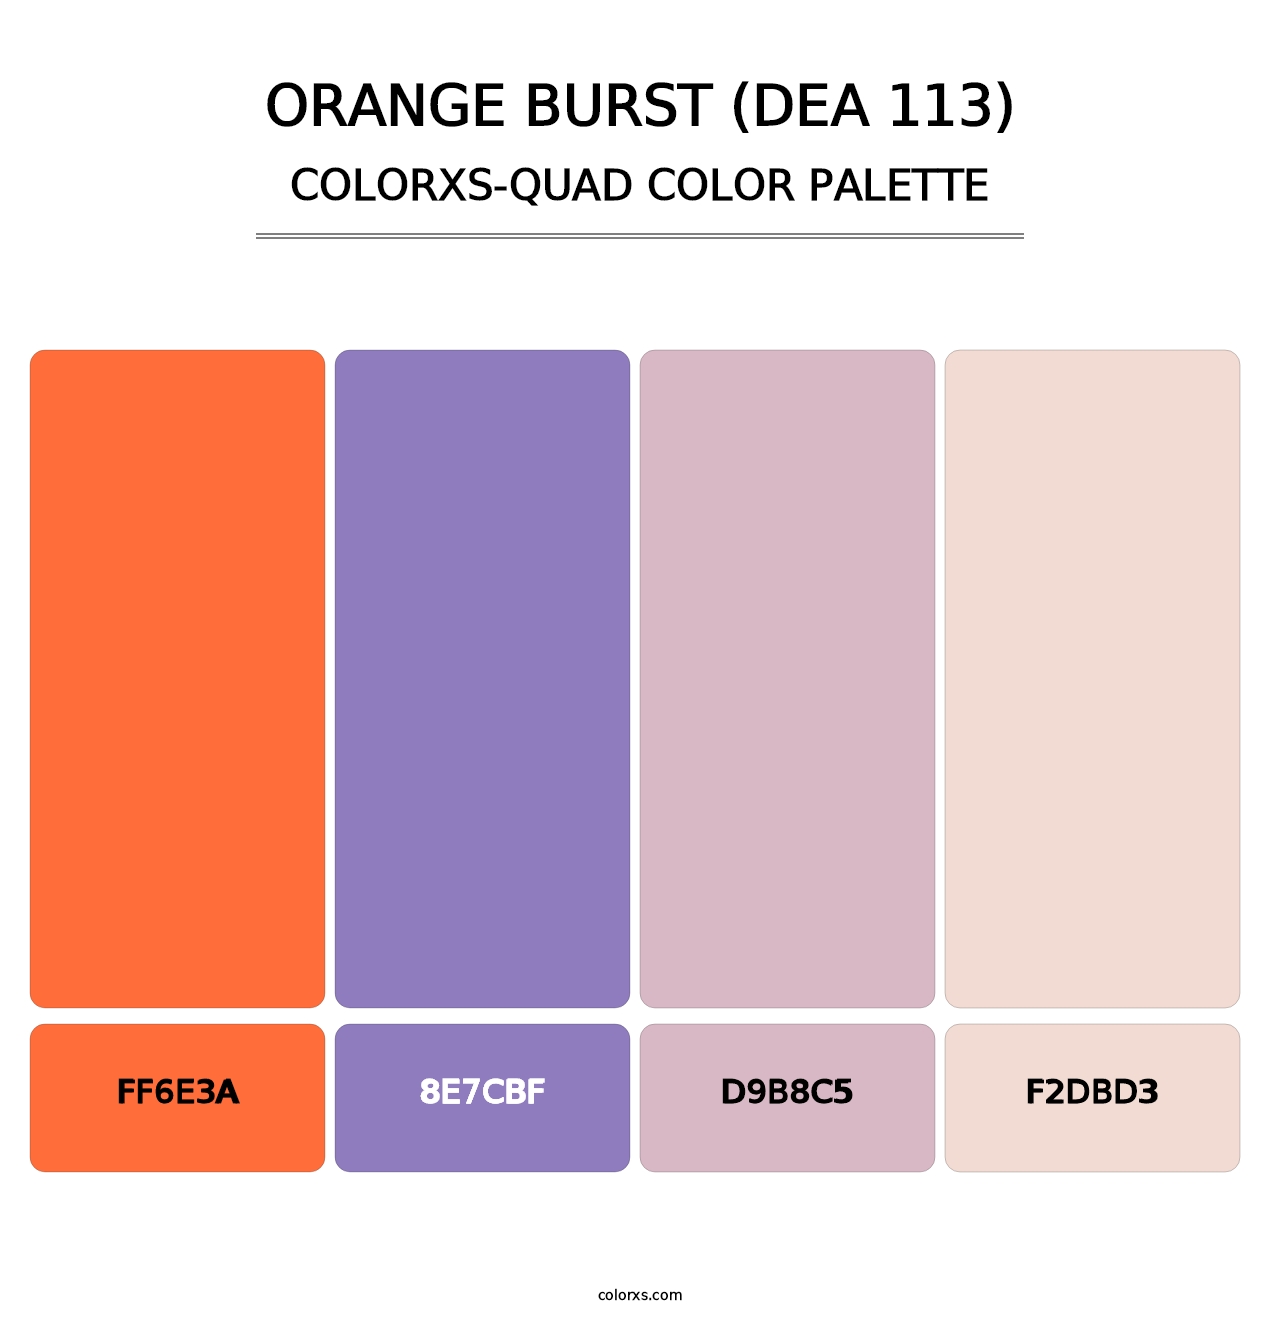 Orange Burst (DEA 113) - Colorxs Quad Palette